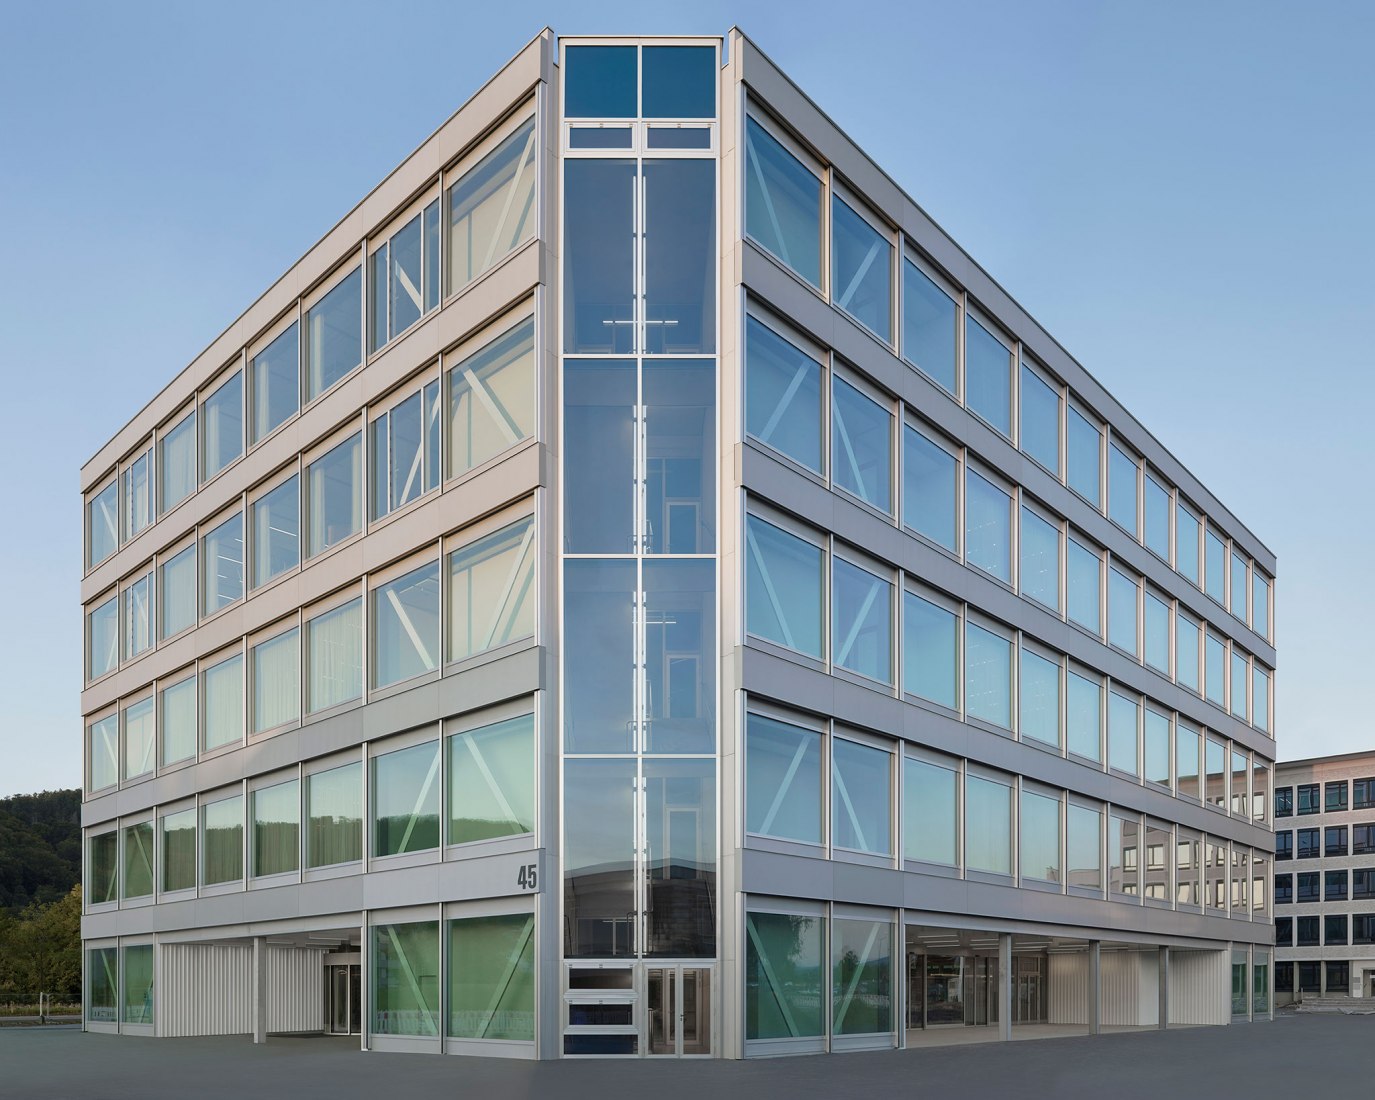 Edificio de espacio de trabajo multifuncional Roche de Christ & Gantenbein. Fotografía por Walter Mair.